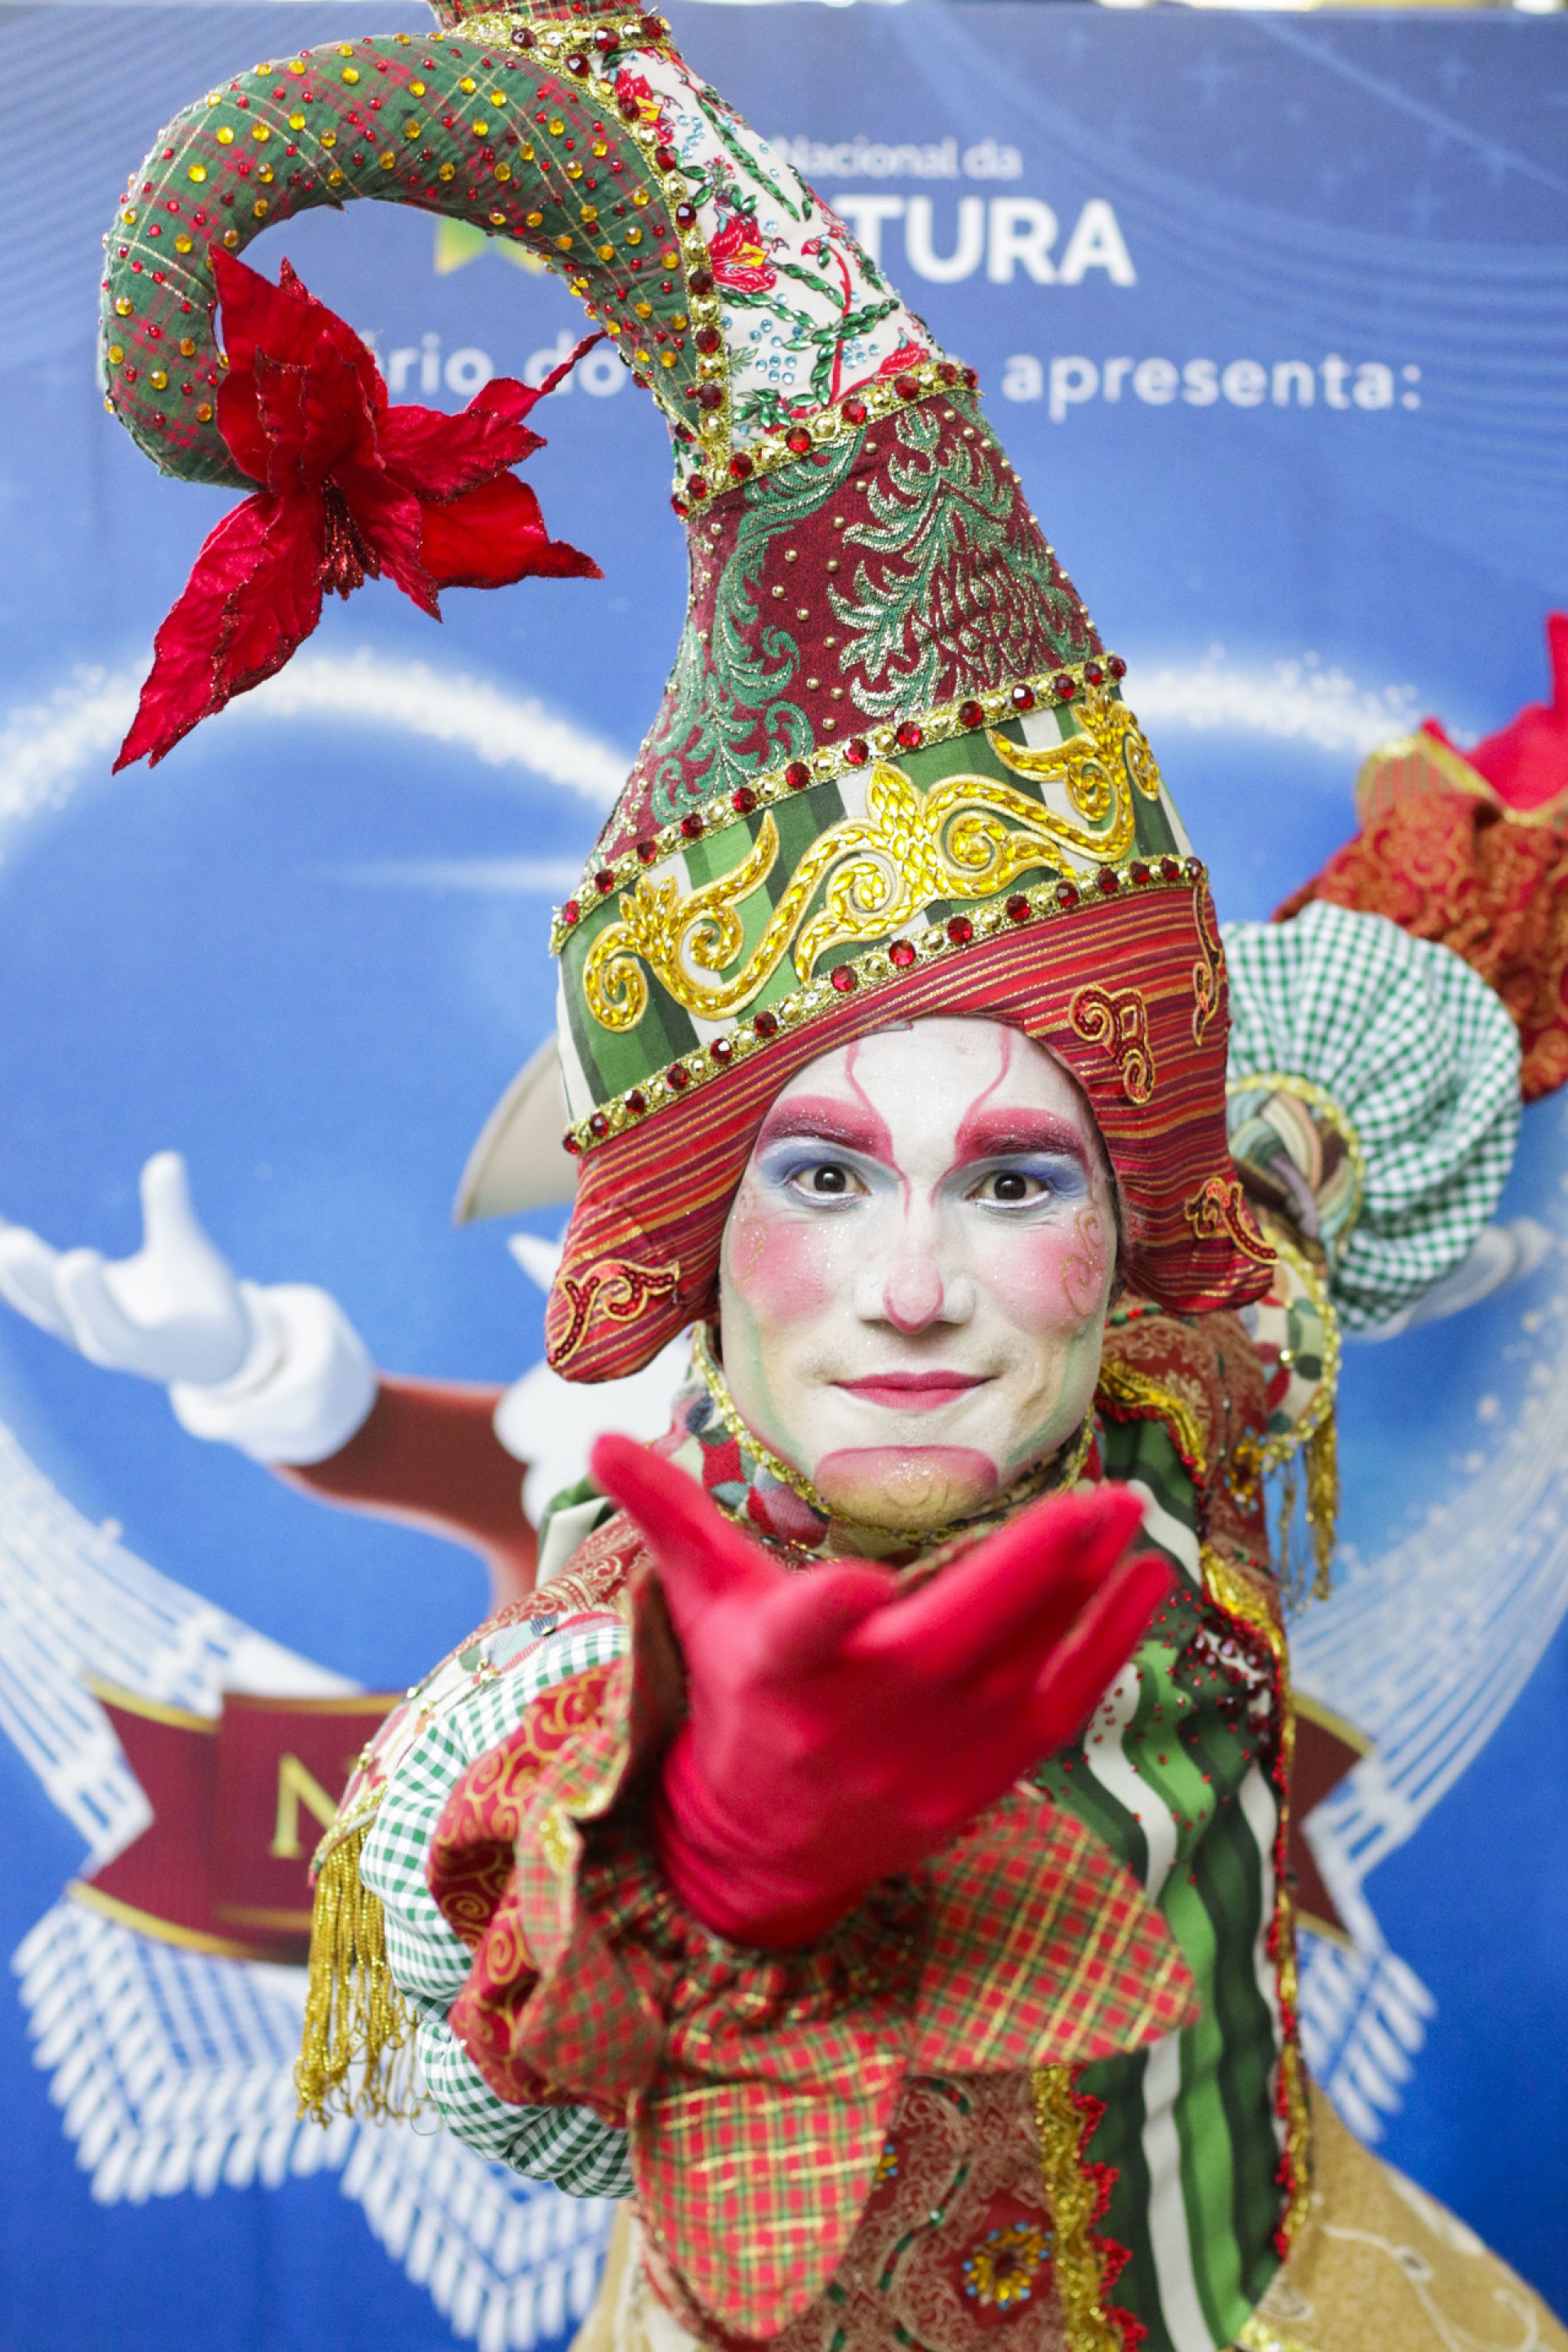 Coral do Natal de Luz terá apresentações presenciais na Praça do Ferreira |  CIDADES | OPOVO+